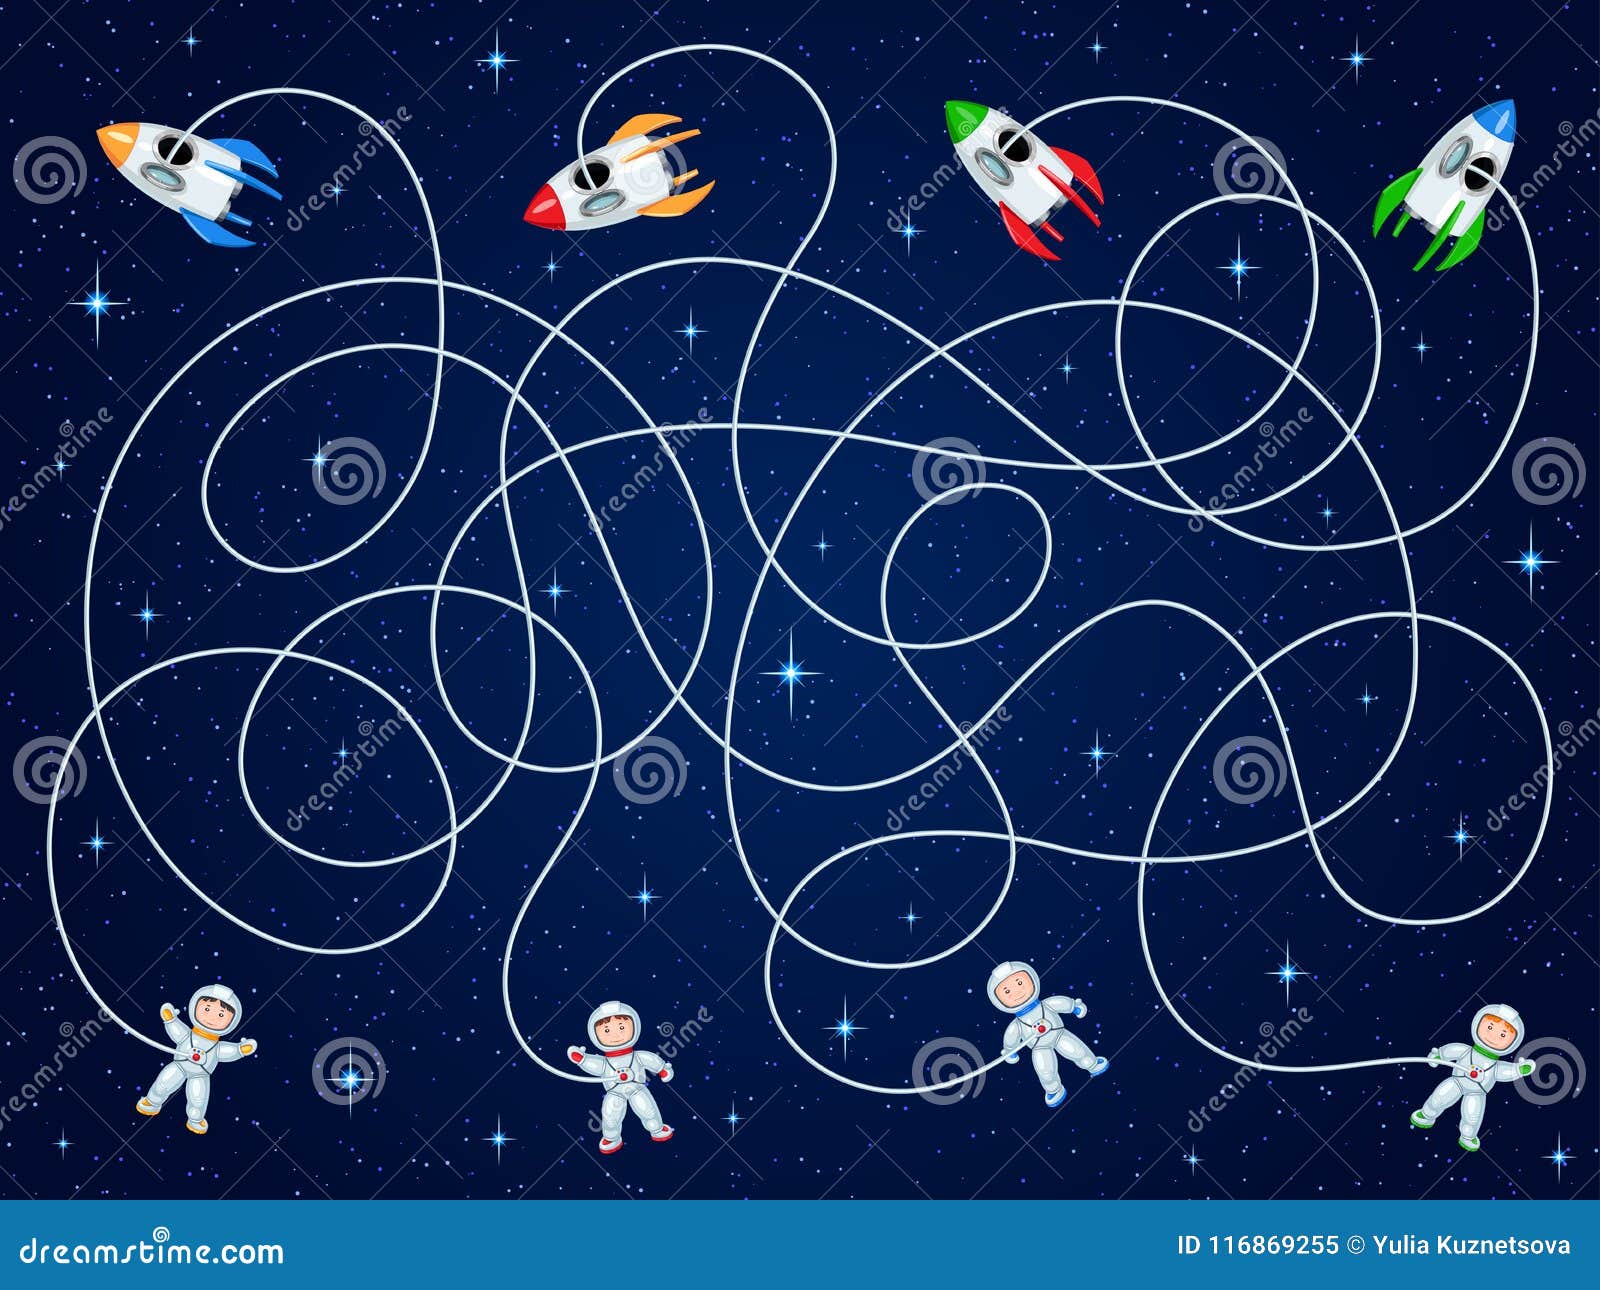 Интерактивная презентация космос. Космос для дошкольников. Детям о космосе. Тема космос для детей. О космосе (развивающая игра).